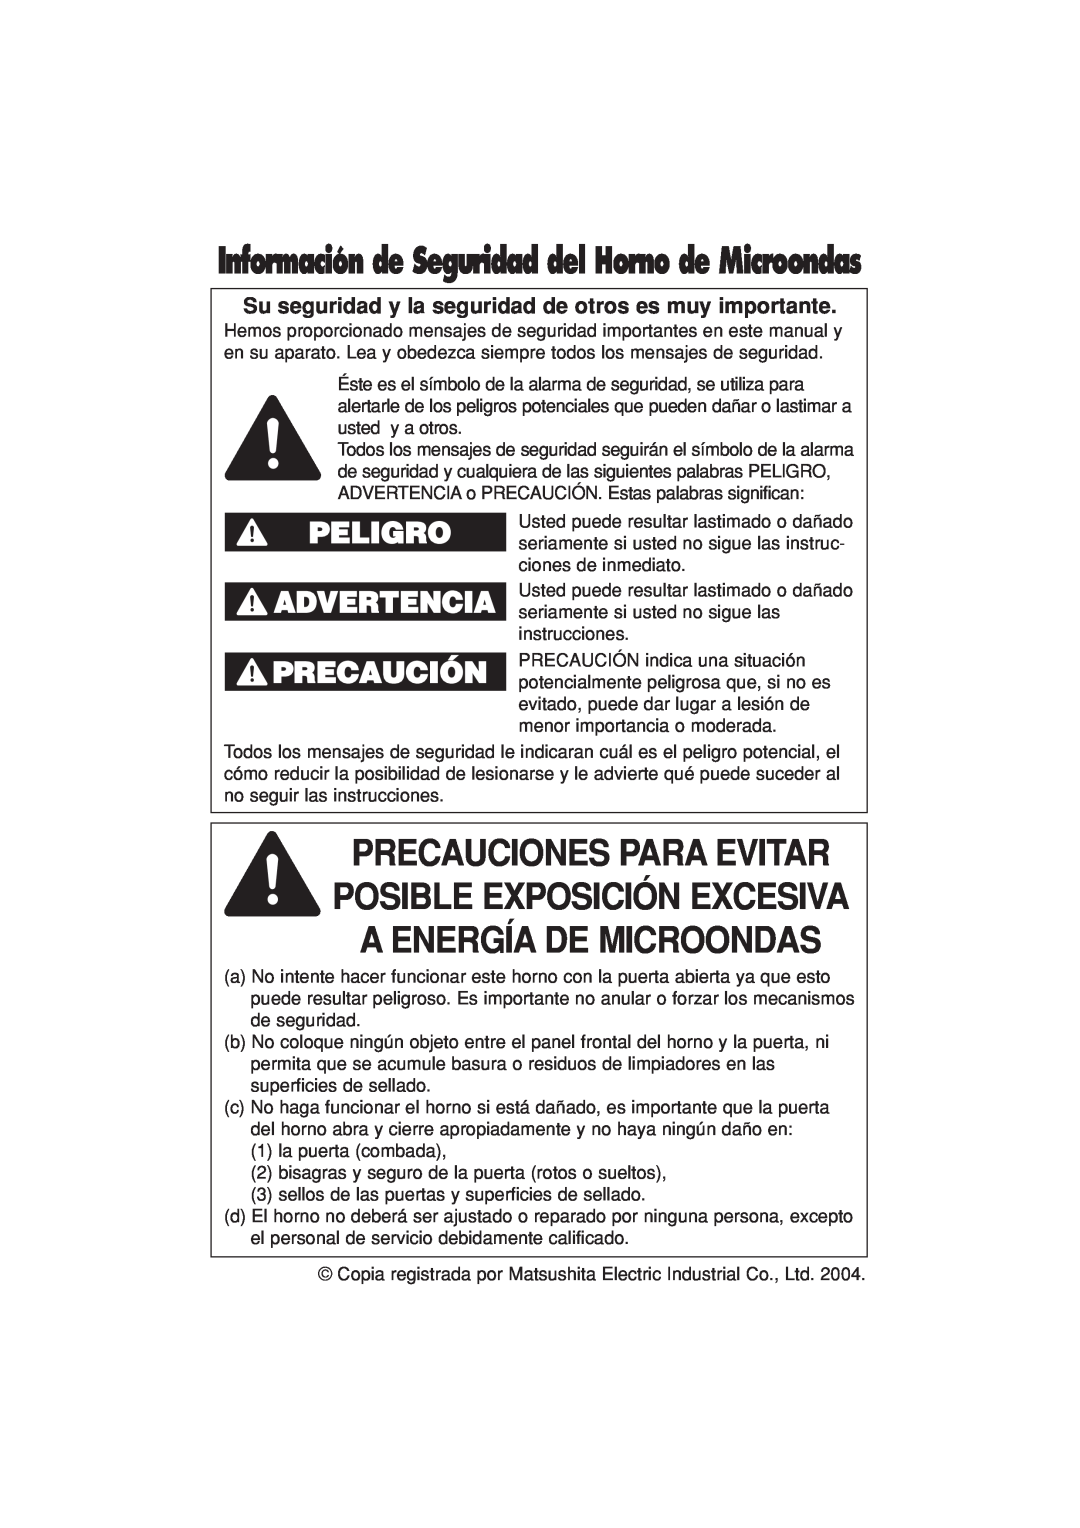 Panasonic NN-H504, NN-H614, NN-H604 Peligro Advertencia, Información de Seguridad del Horno de Microondas 